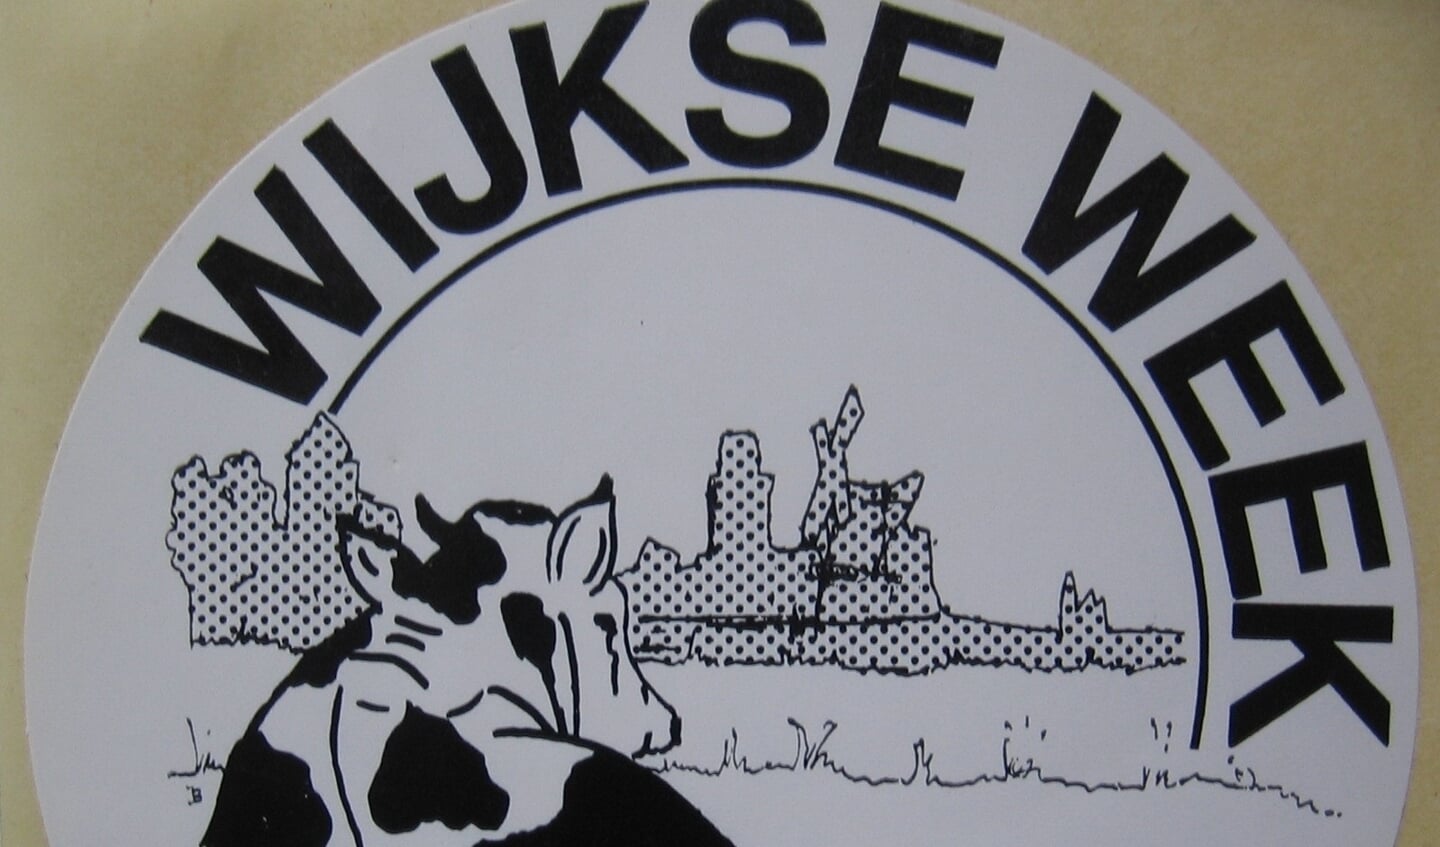 Het logo van de Wijkse Week begin jaren '80